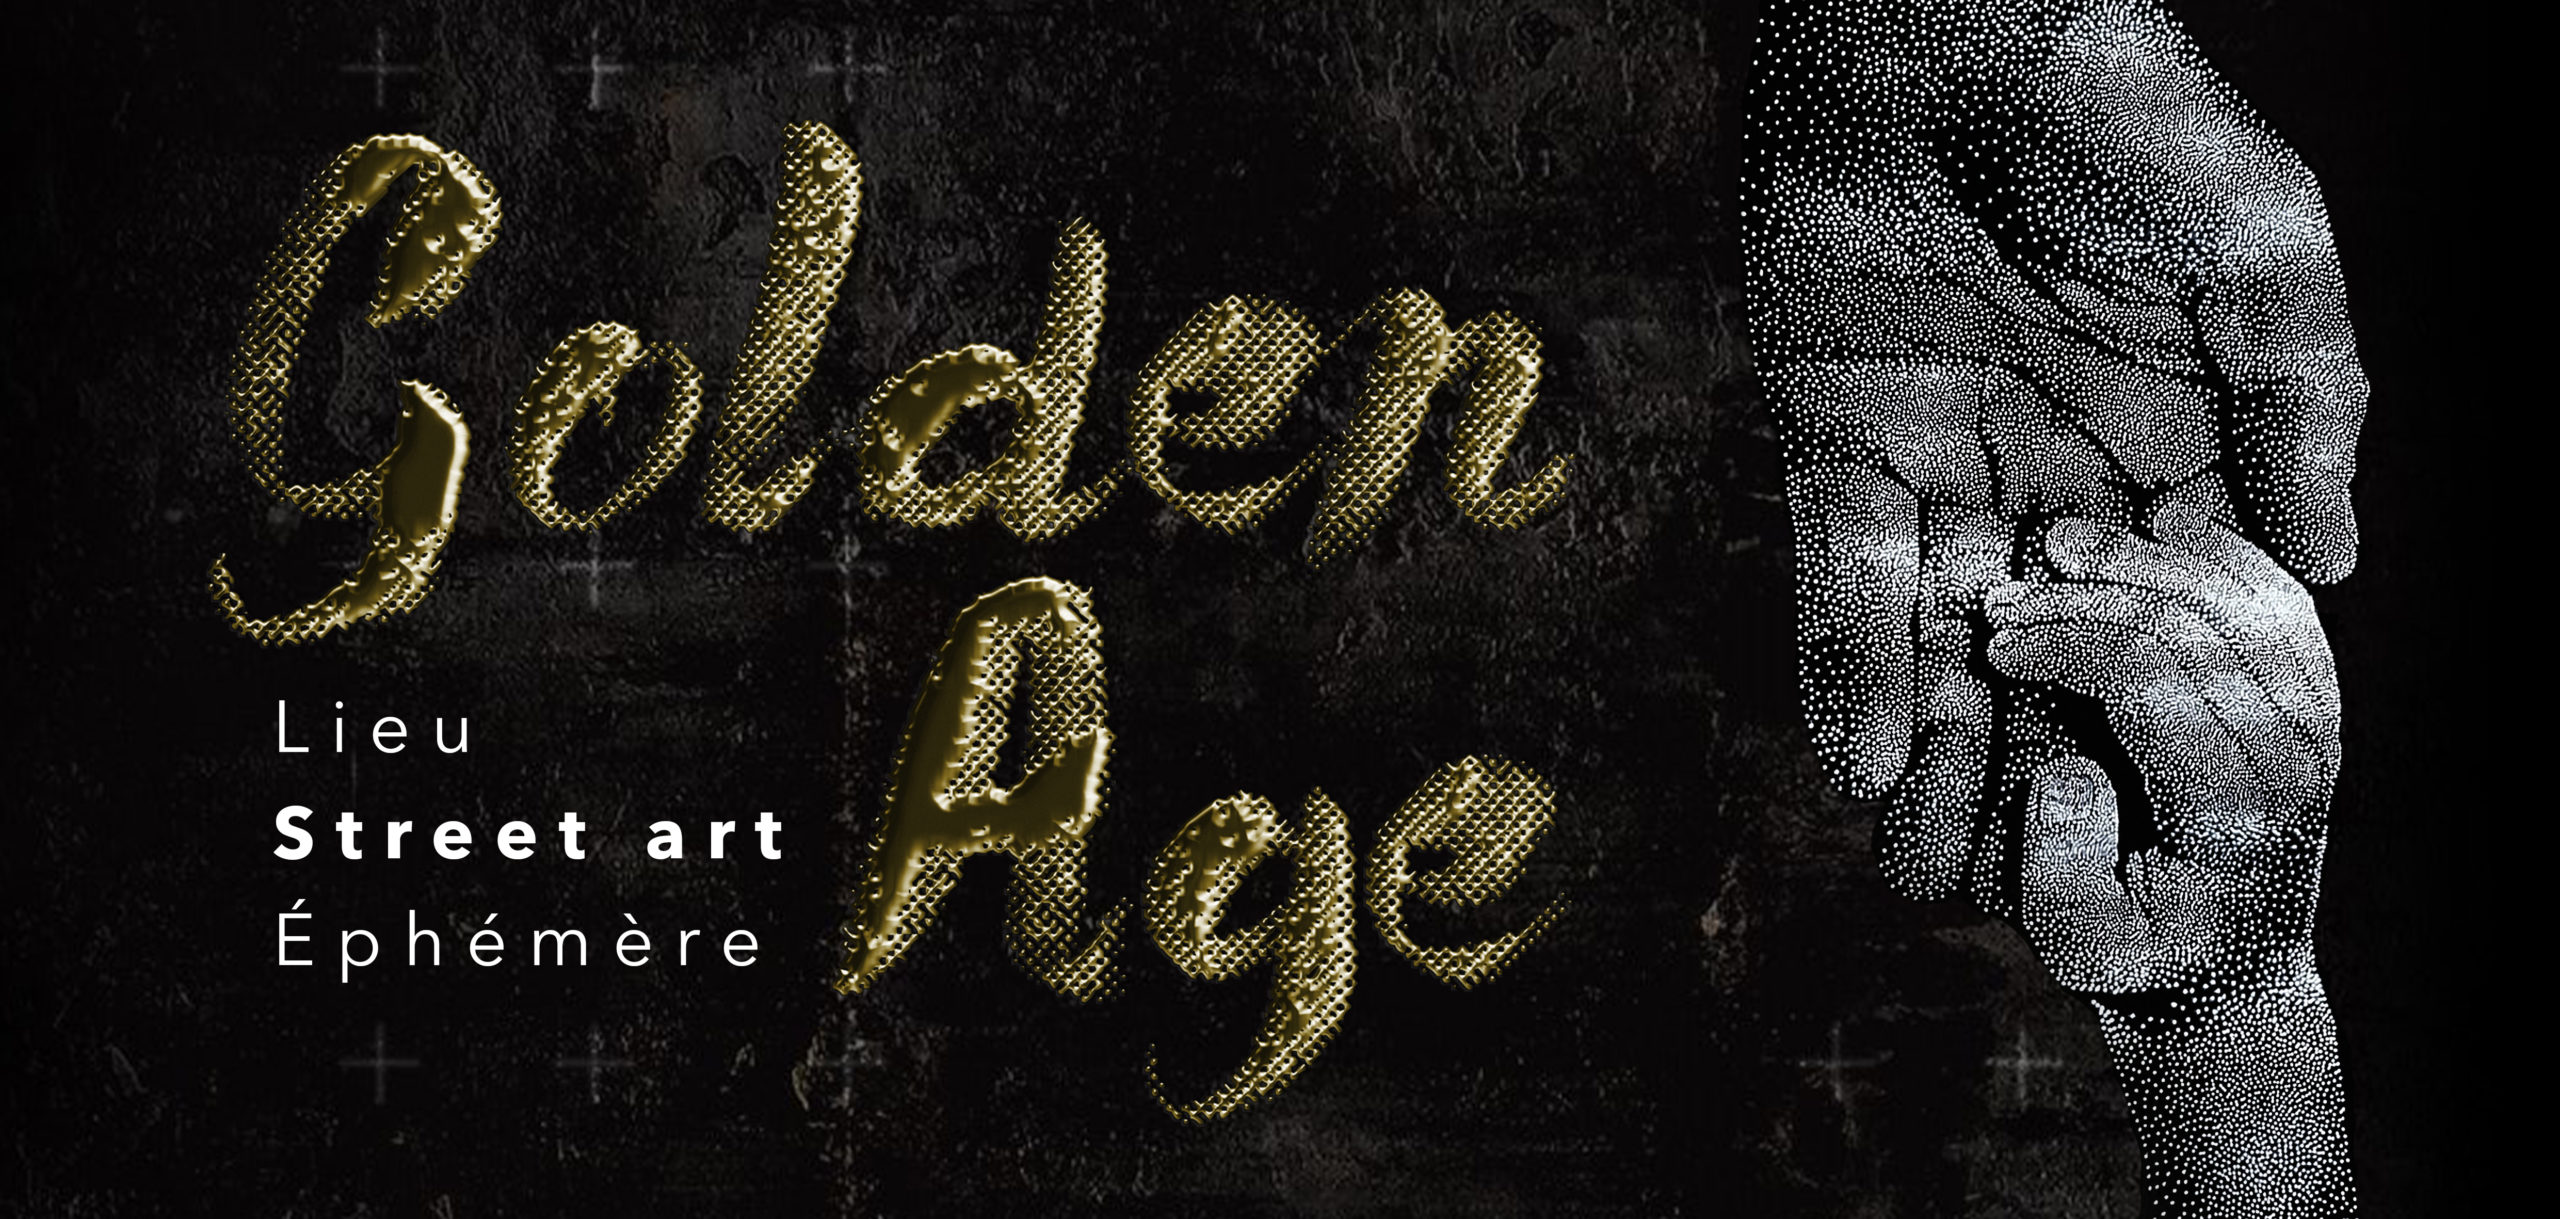 Golden Age + Lieu Street art Ephémère